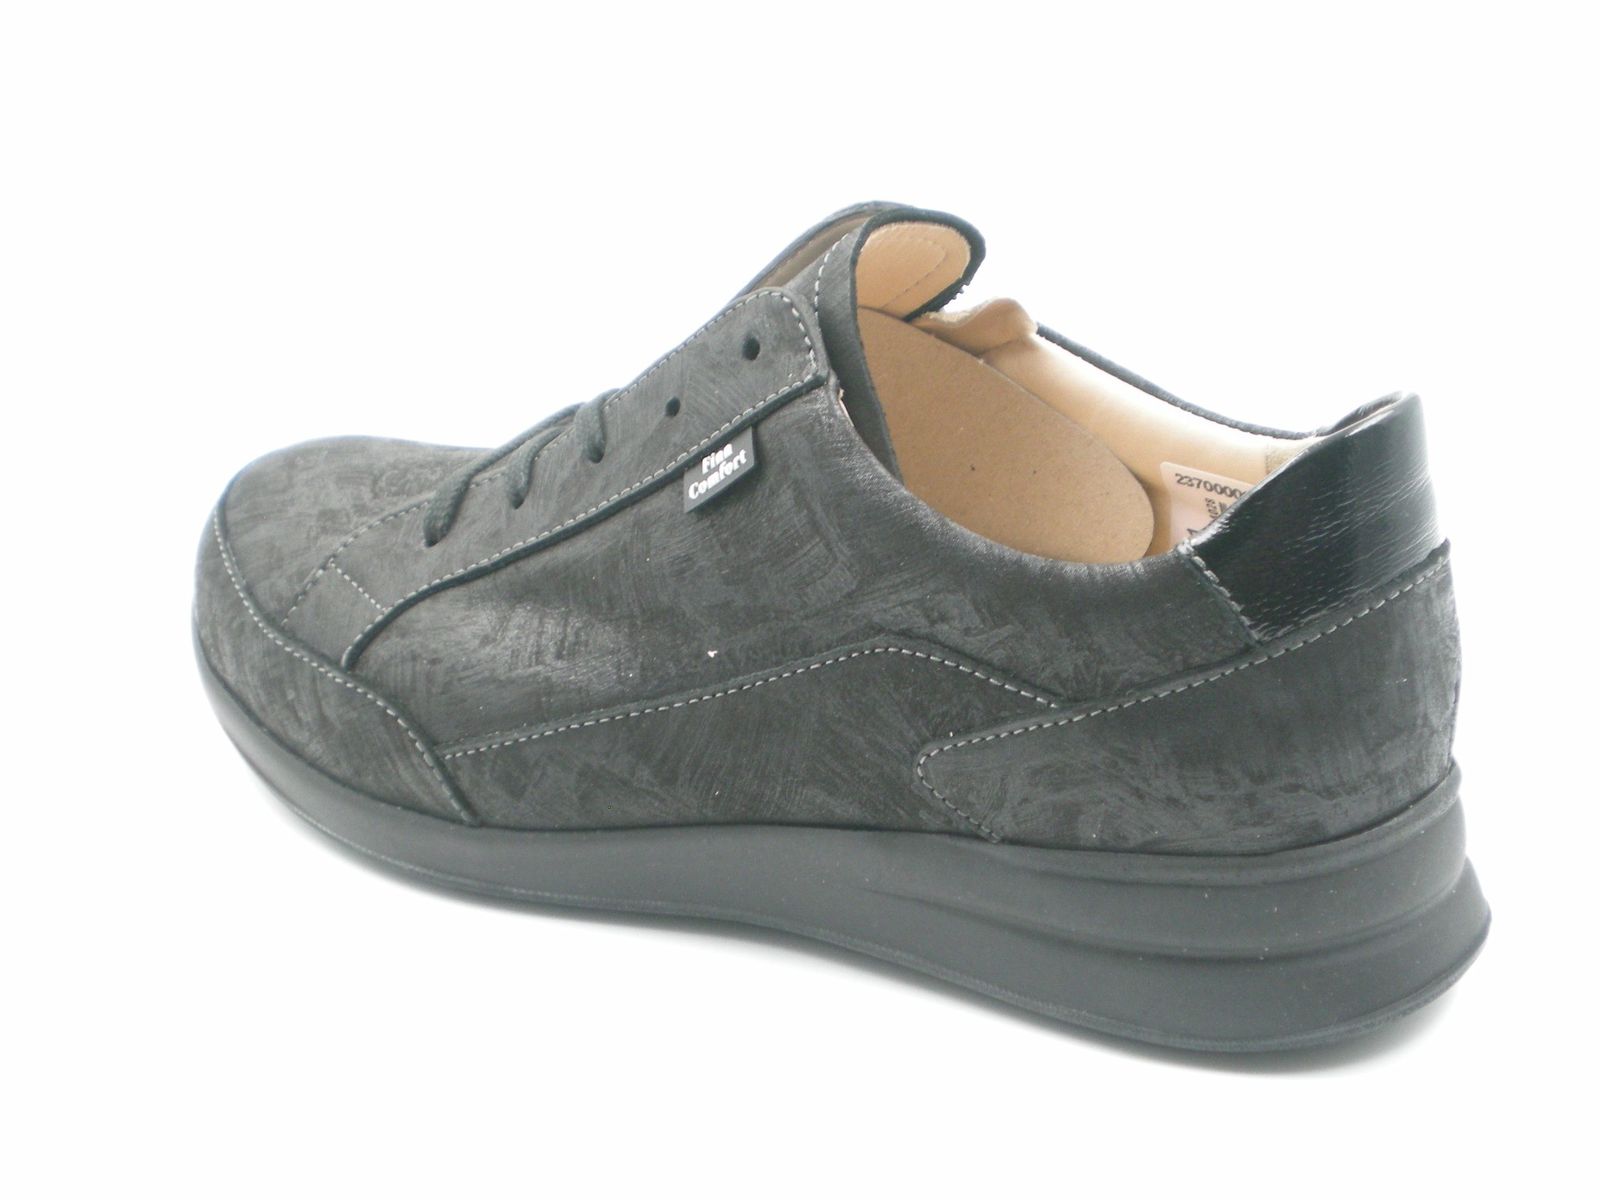 Schuh von Finn Comfort, 6,5